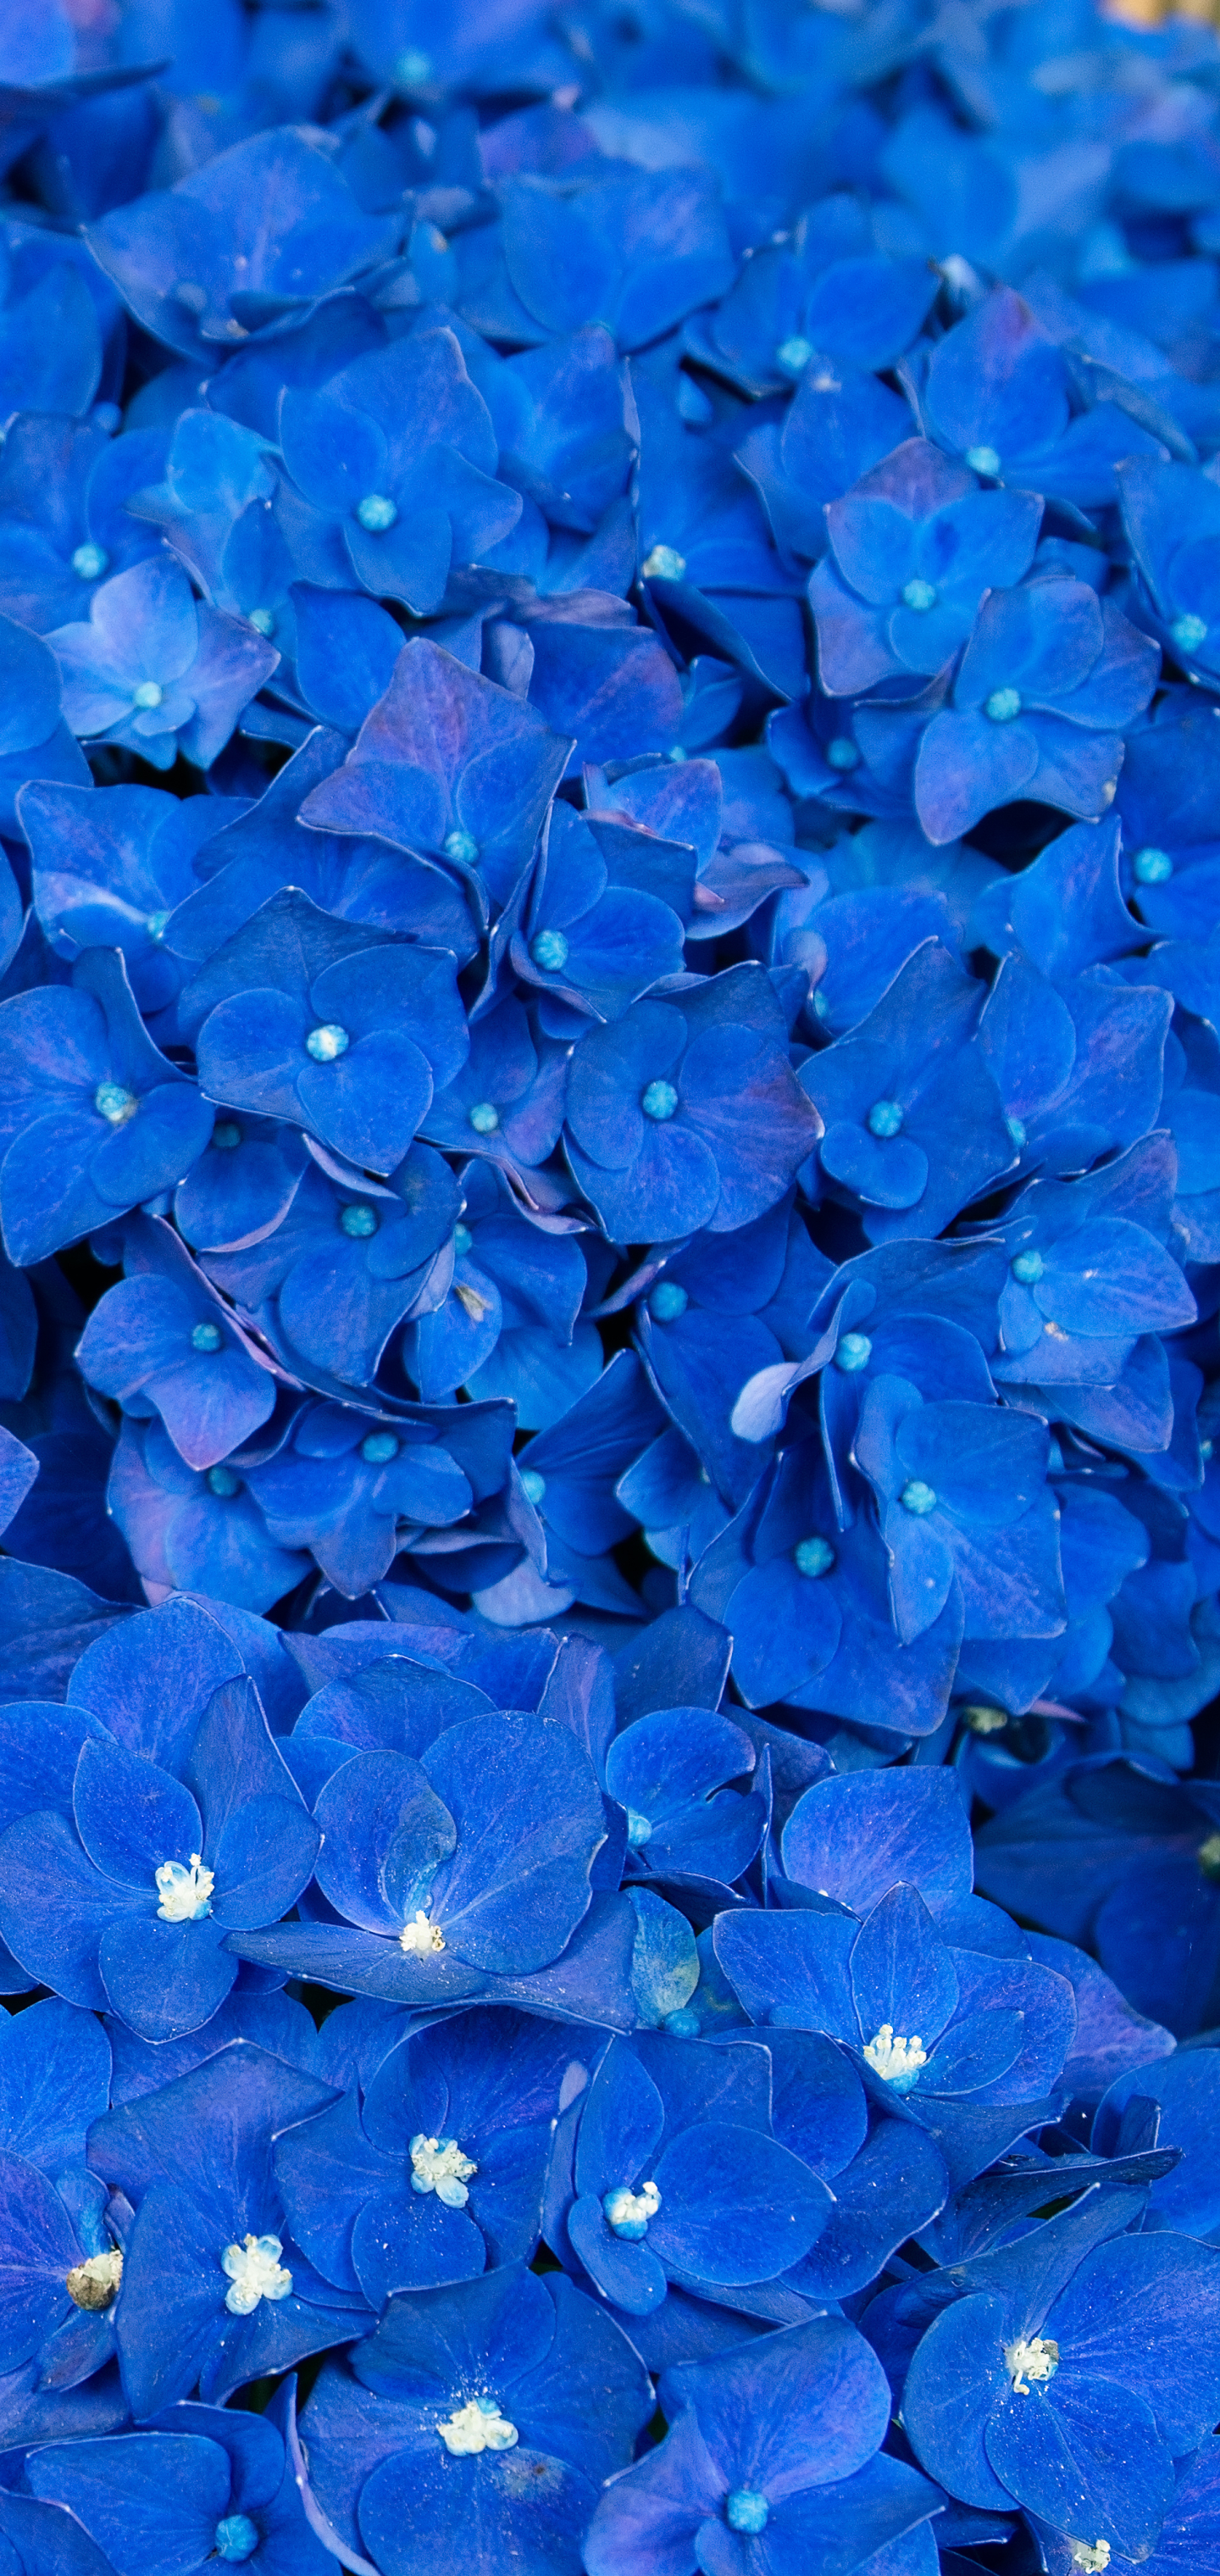 A sea of Blue Hydrangeas